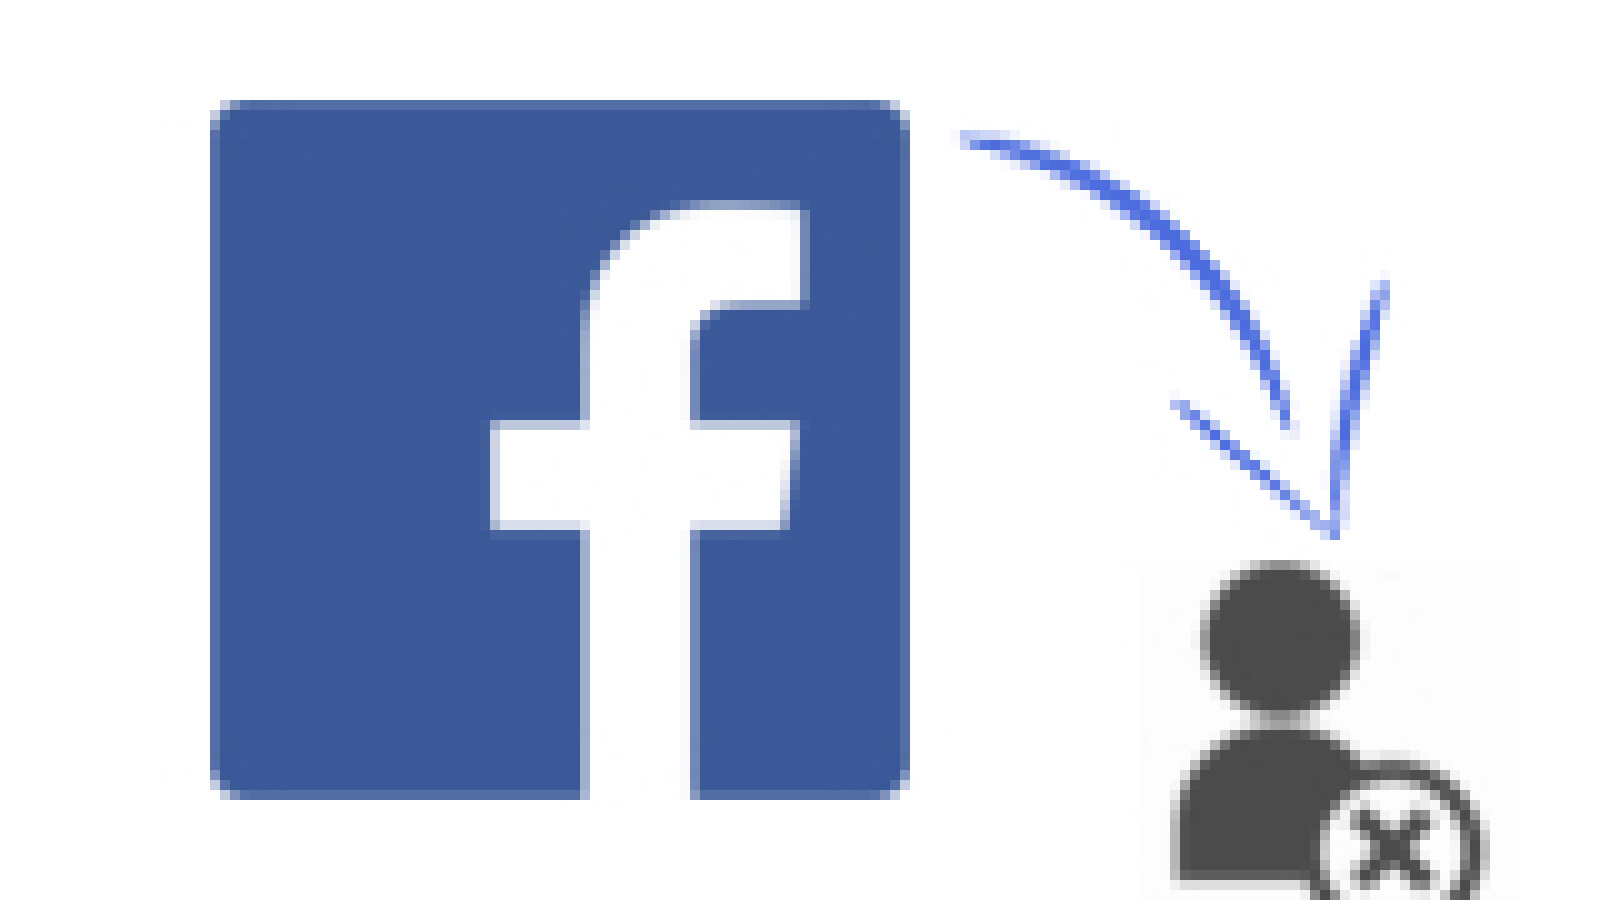 Facebook konto vorübergehend deaktivieren